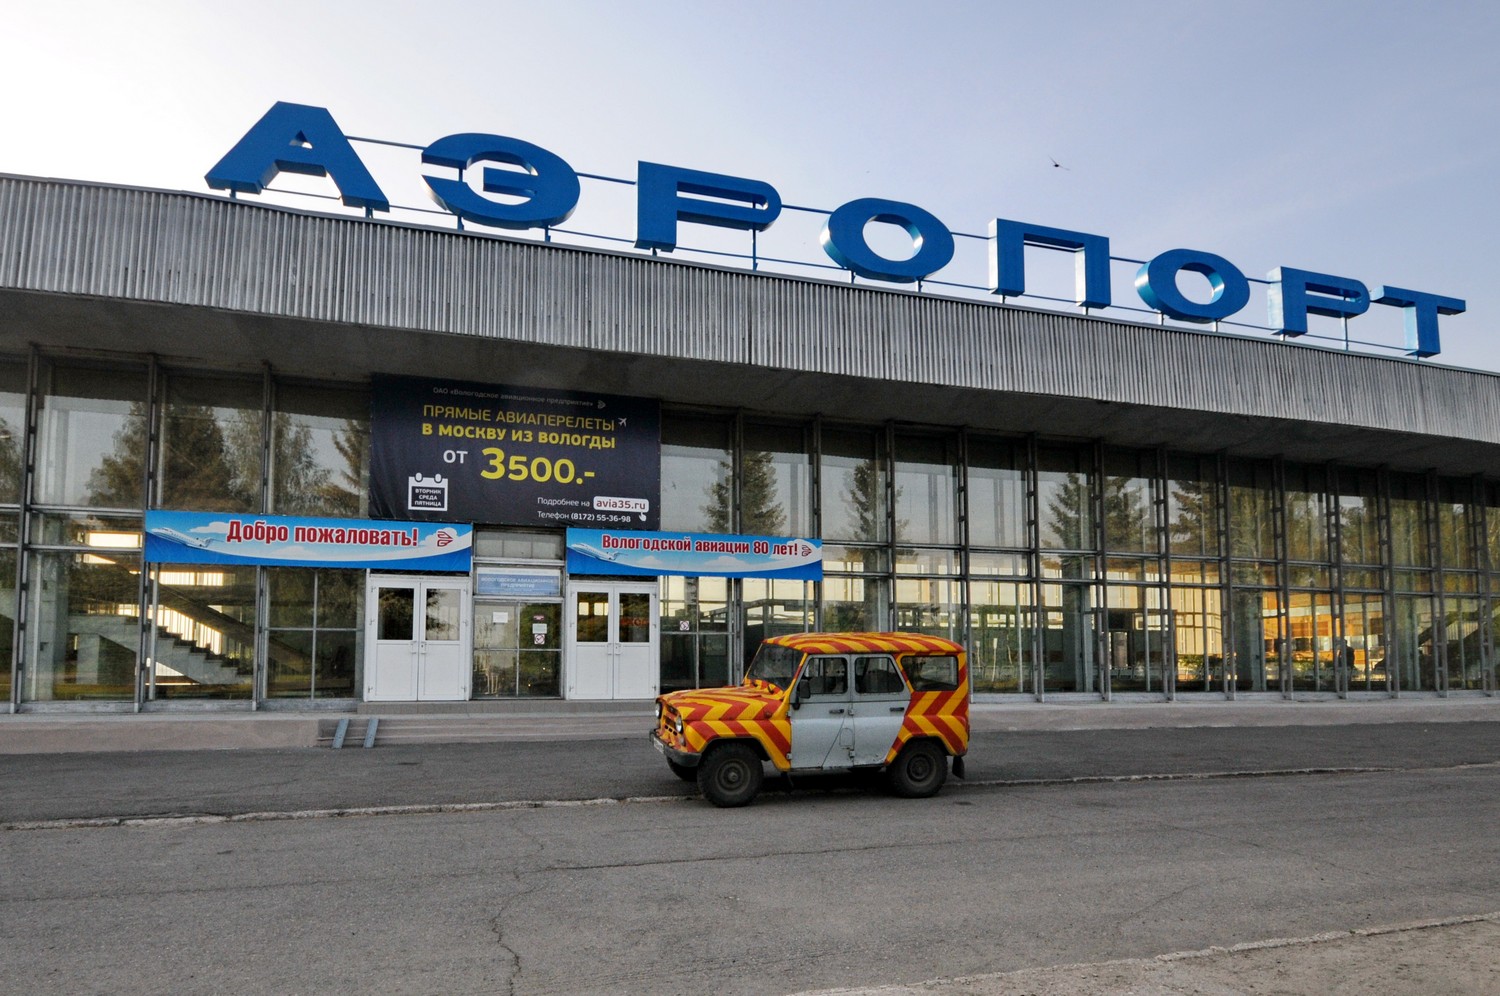 Feel youserlf VIP на Як-40 Вологодского авиапредприятия